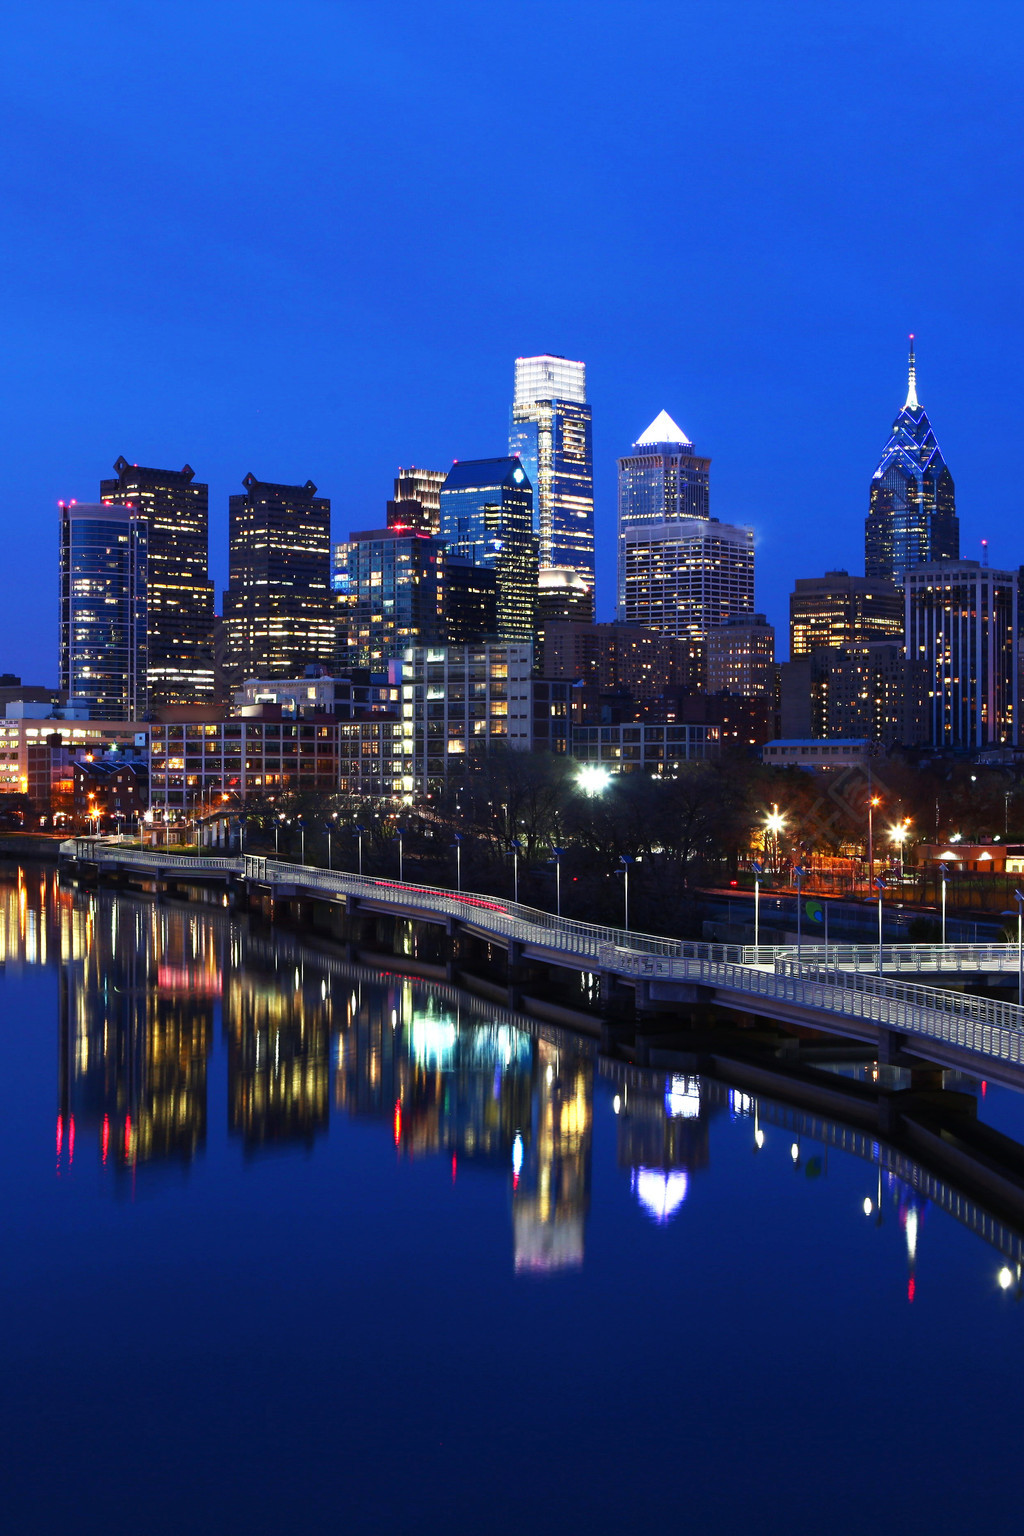 费城城市天际线的垂直夜景4天前发布